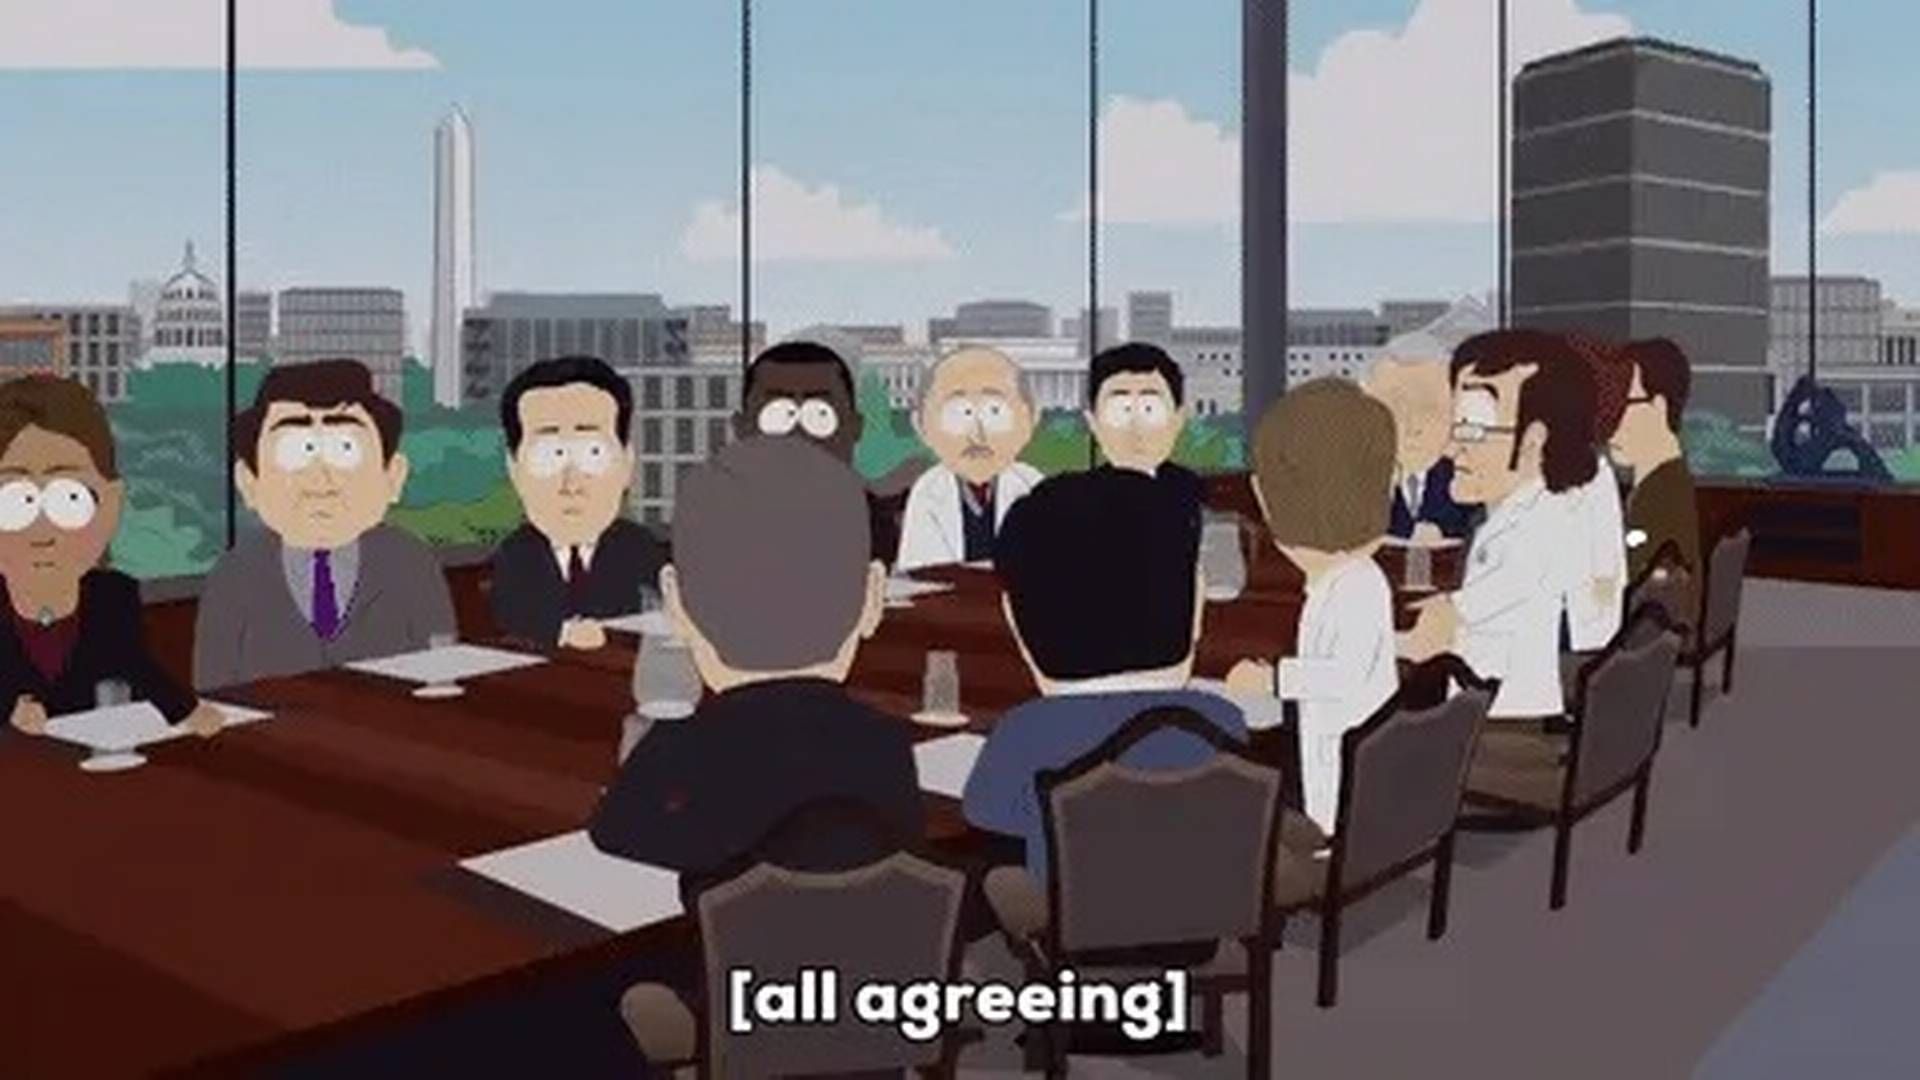 Corporate sprogbrug indikerer en vis usikkerhed, fordi man kopierer andres adfærd og ikke tør tage chancen med en ny måde at sige tingene på. | Foto: South Park